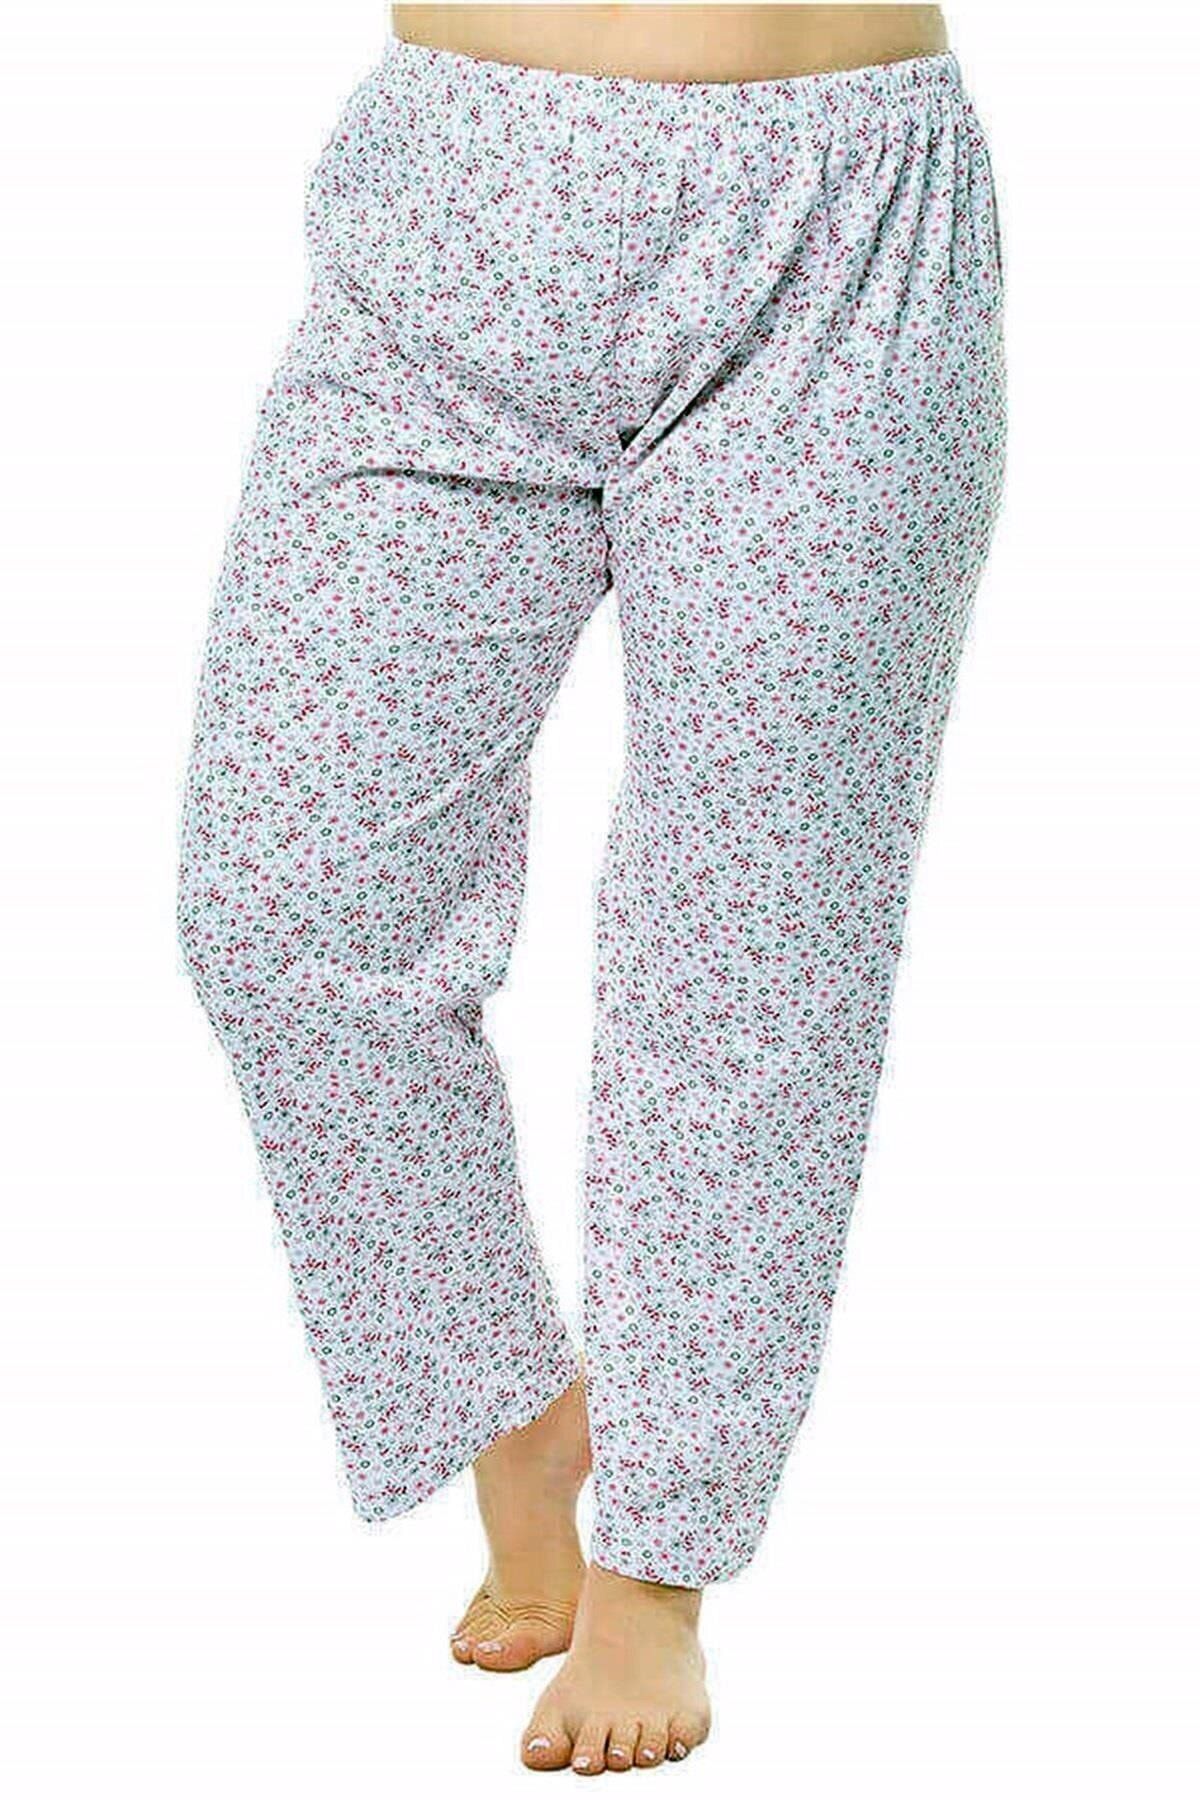 kapbirtane Kadın Tek Alt Pijama Çiçek Desenli Jumbo Boy